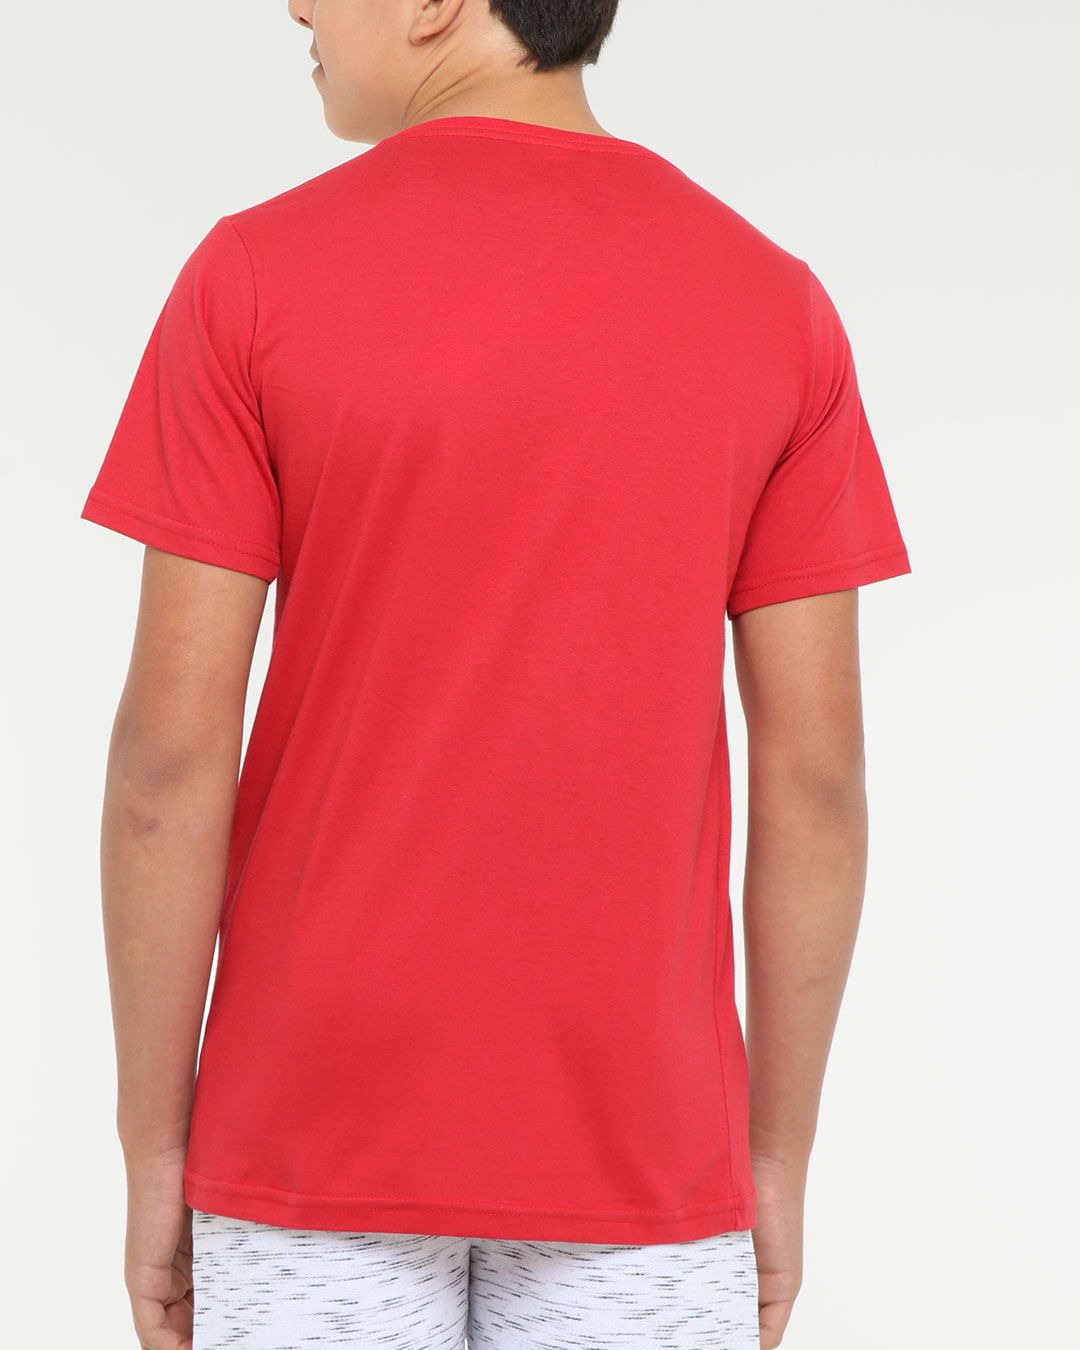 Camiseta-Juvenil-Estampa-Let-S-Go-Vermelha